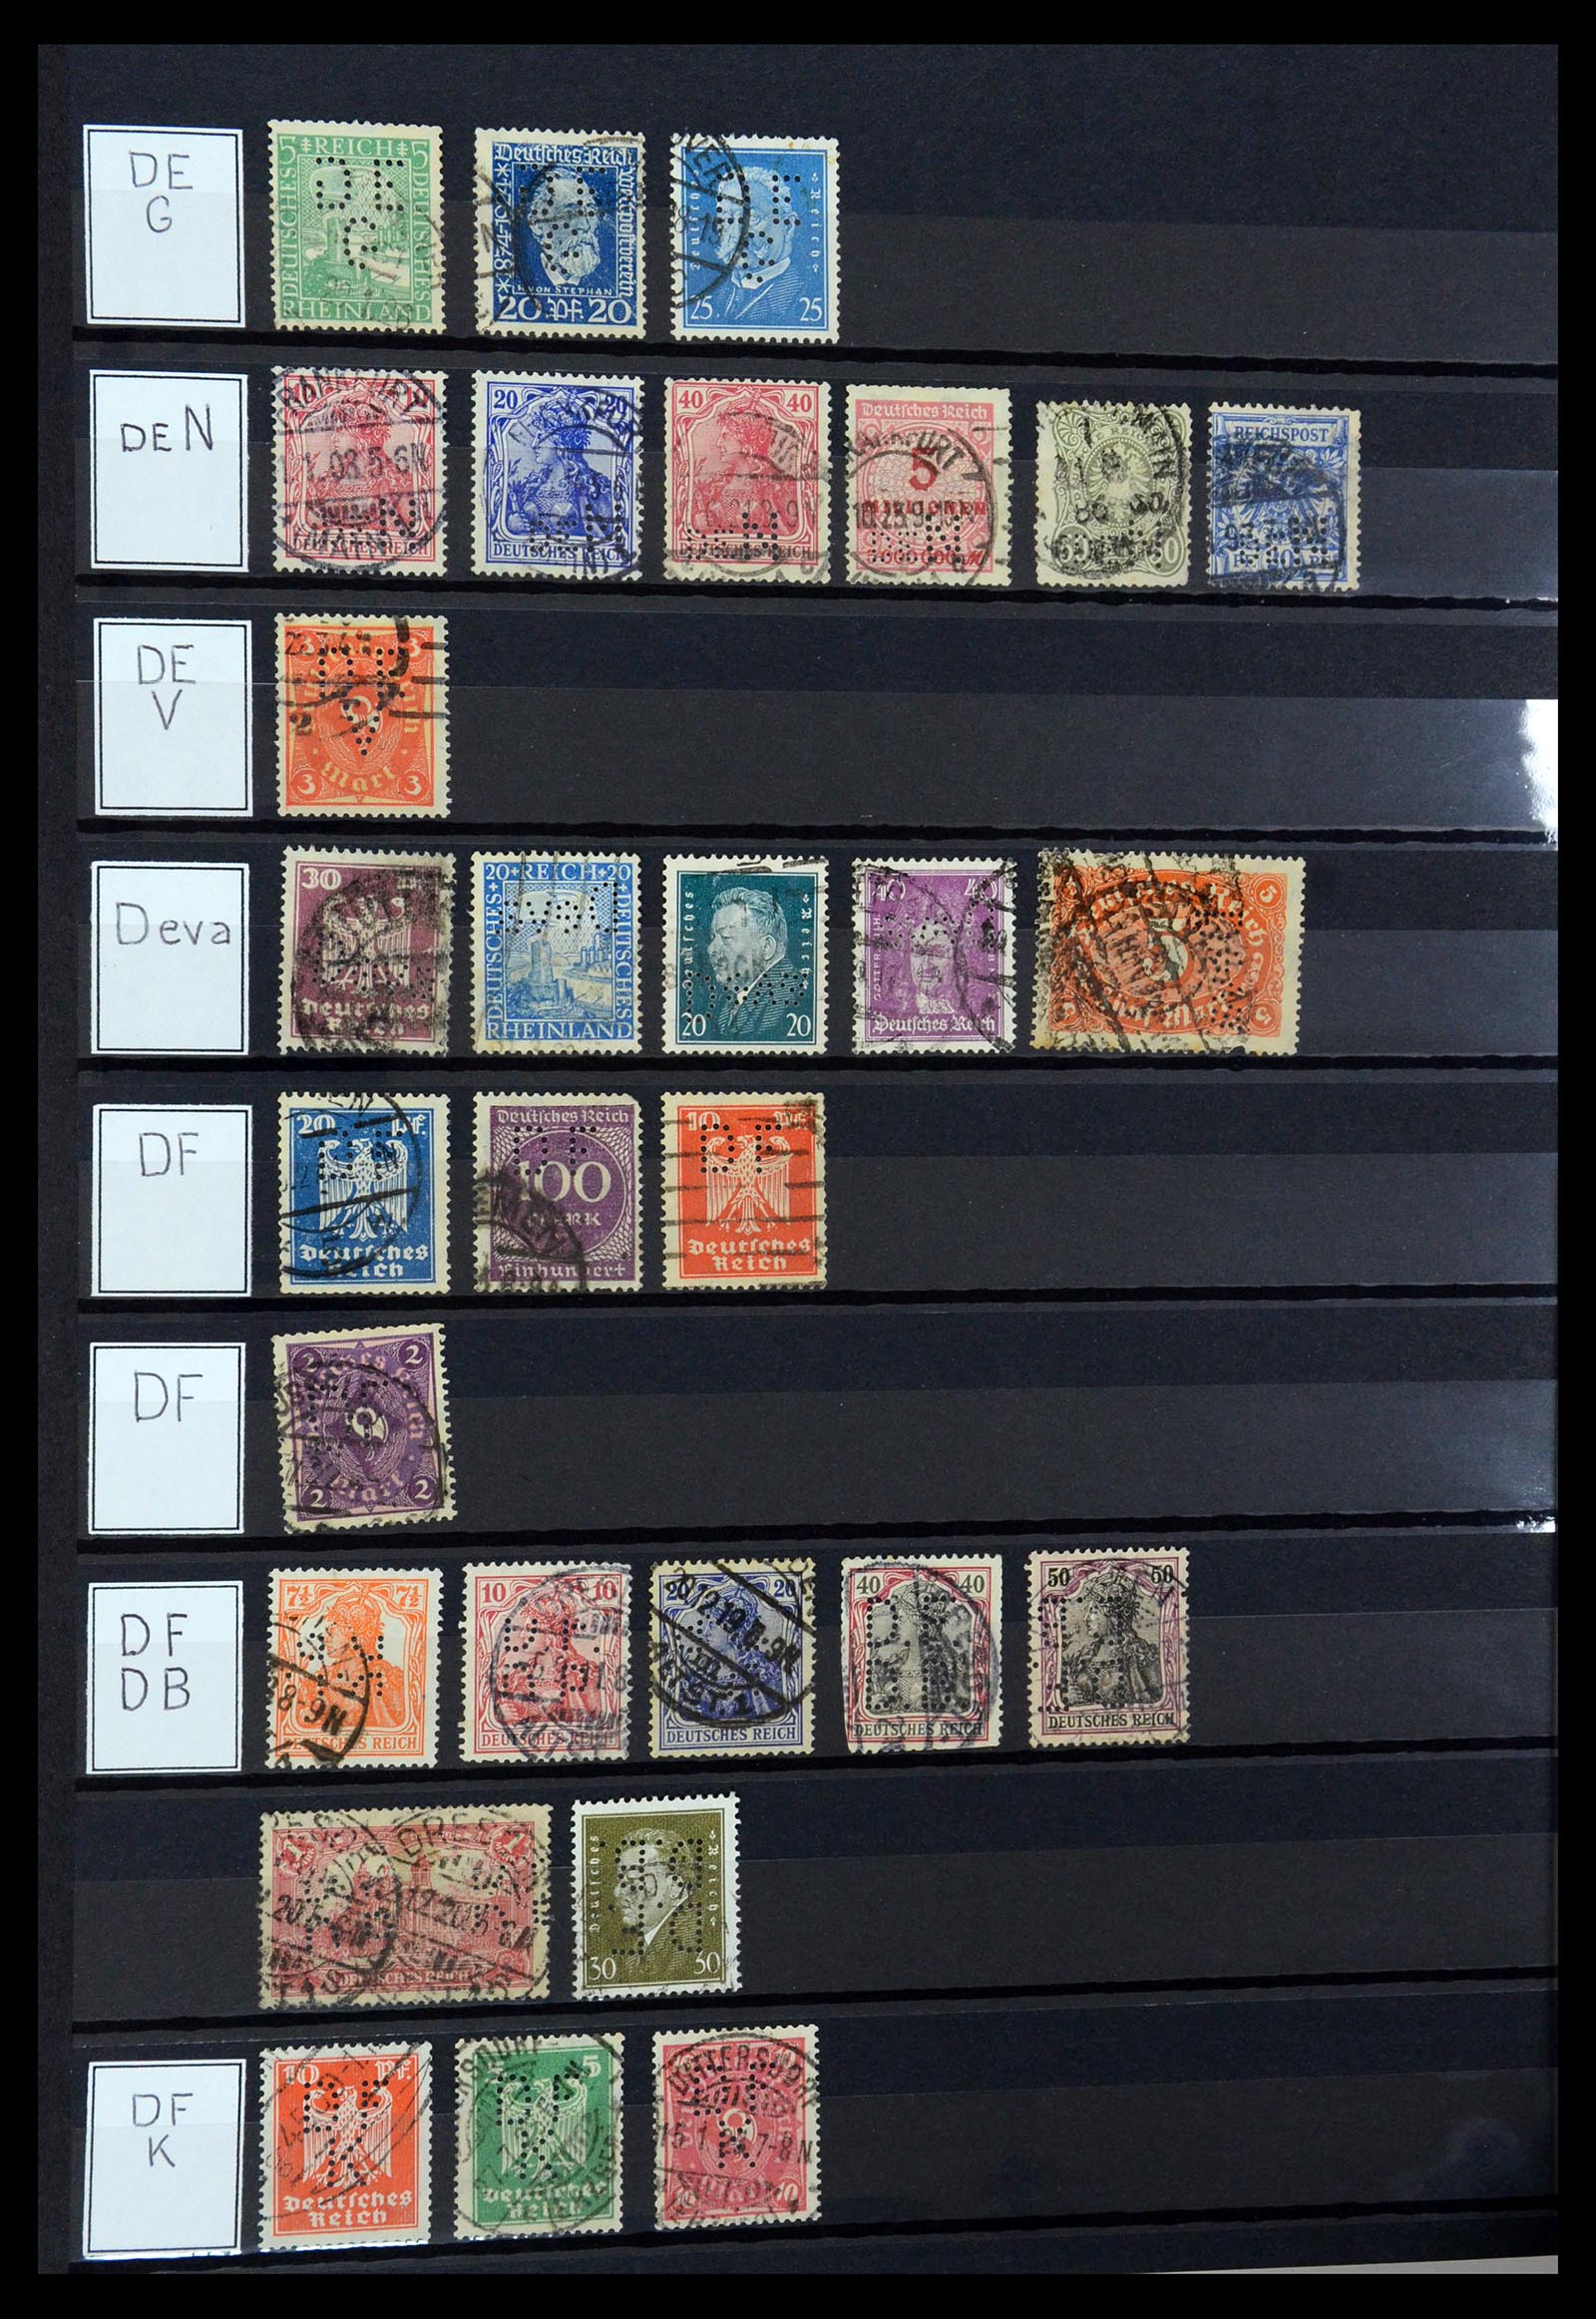 36405 094 - Stamp collection 36405 German Reich perfins 1880-1945.